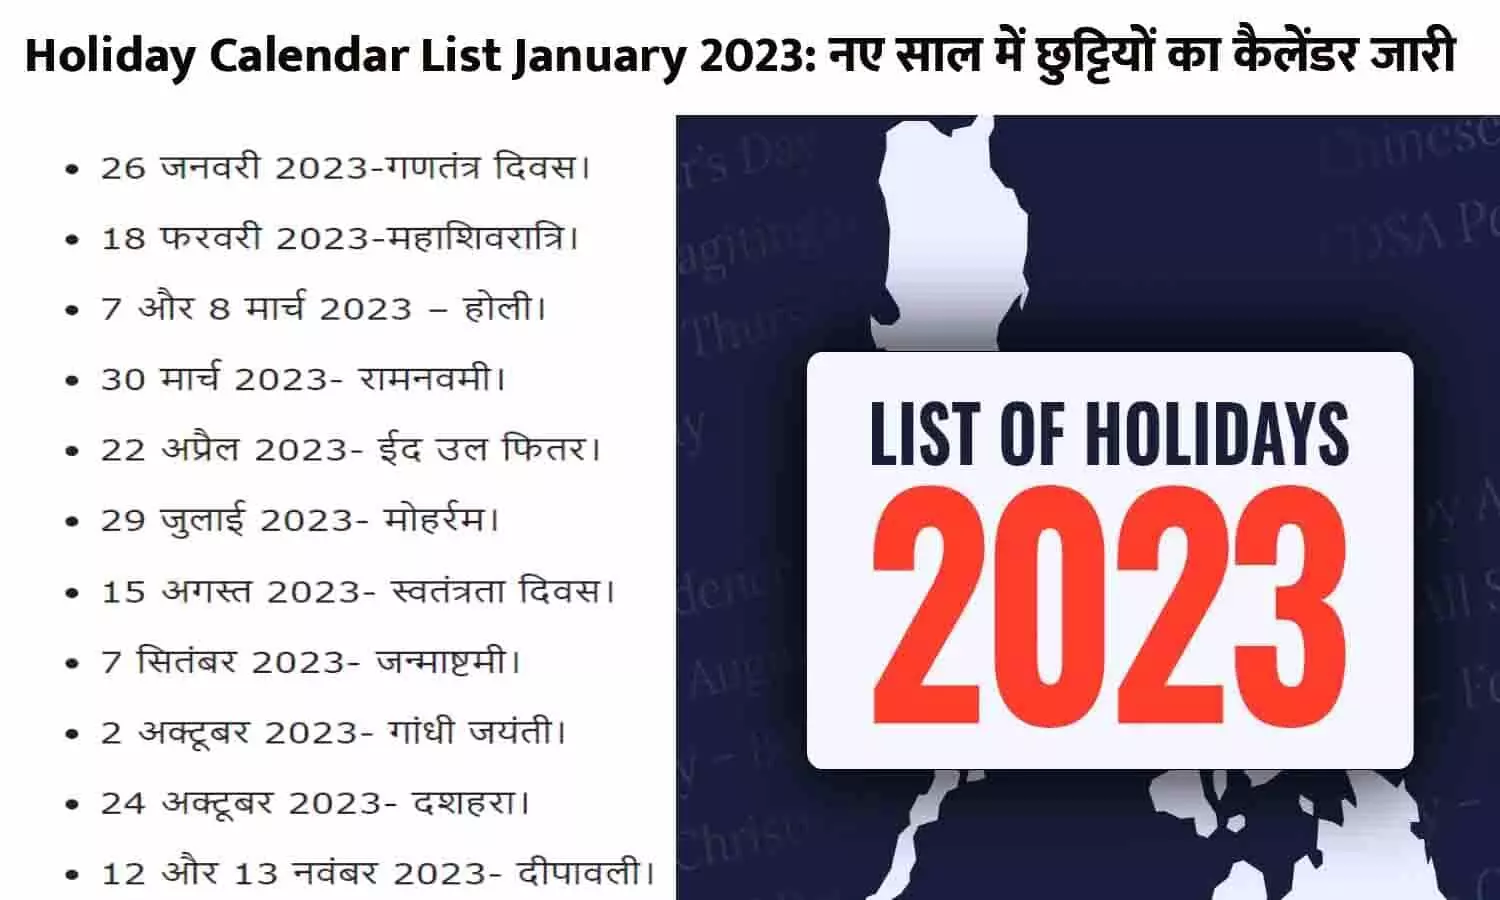 Holiday Calendar List January 2023: जारी हुआ कैलेंडर! नए साल में मिलेगी इतने दिन की छुट्टी, 2023 में कर्मचारियों समेत इन्हें मिलेगा लाभ